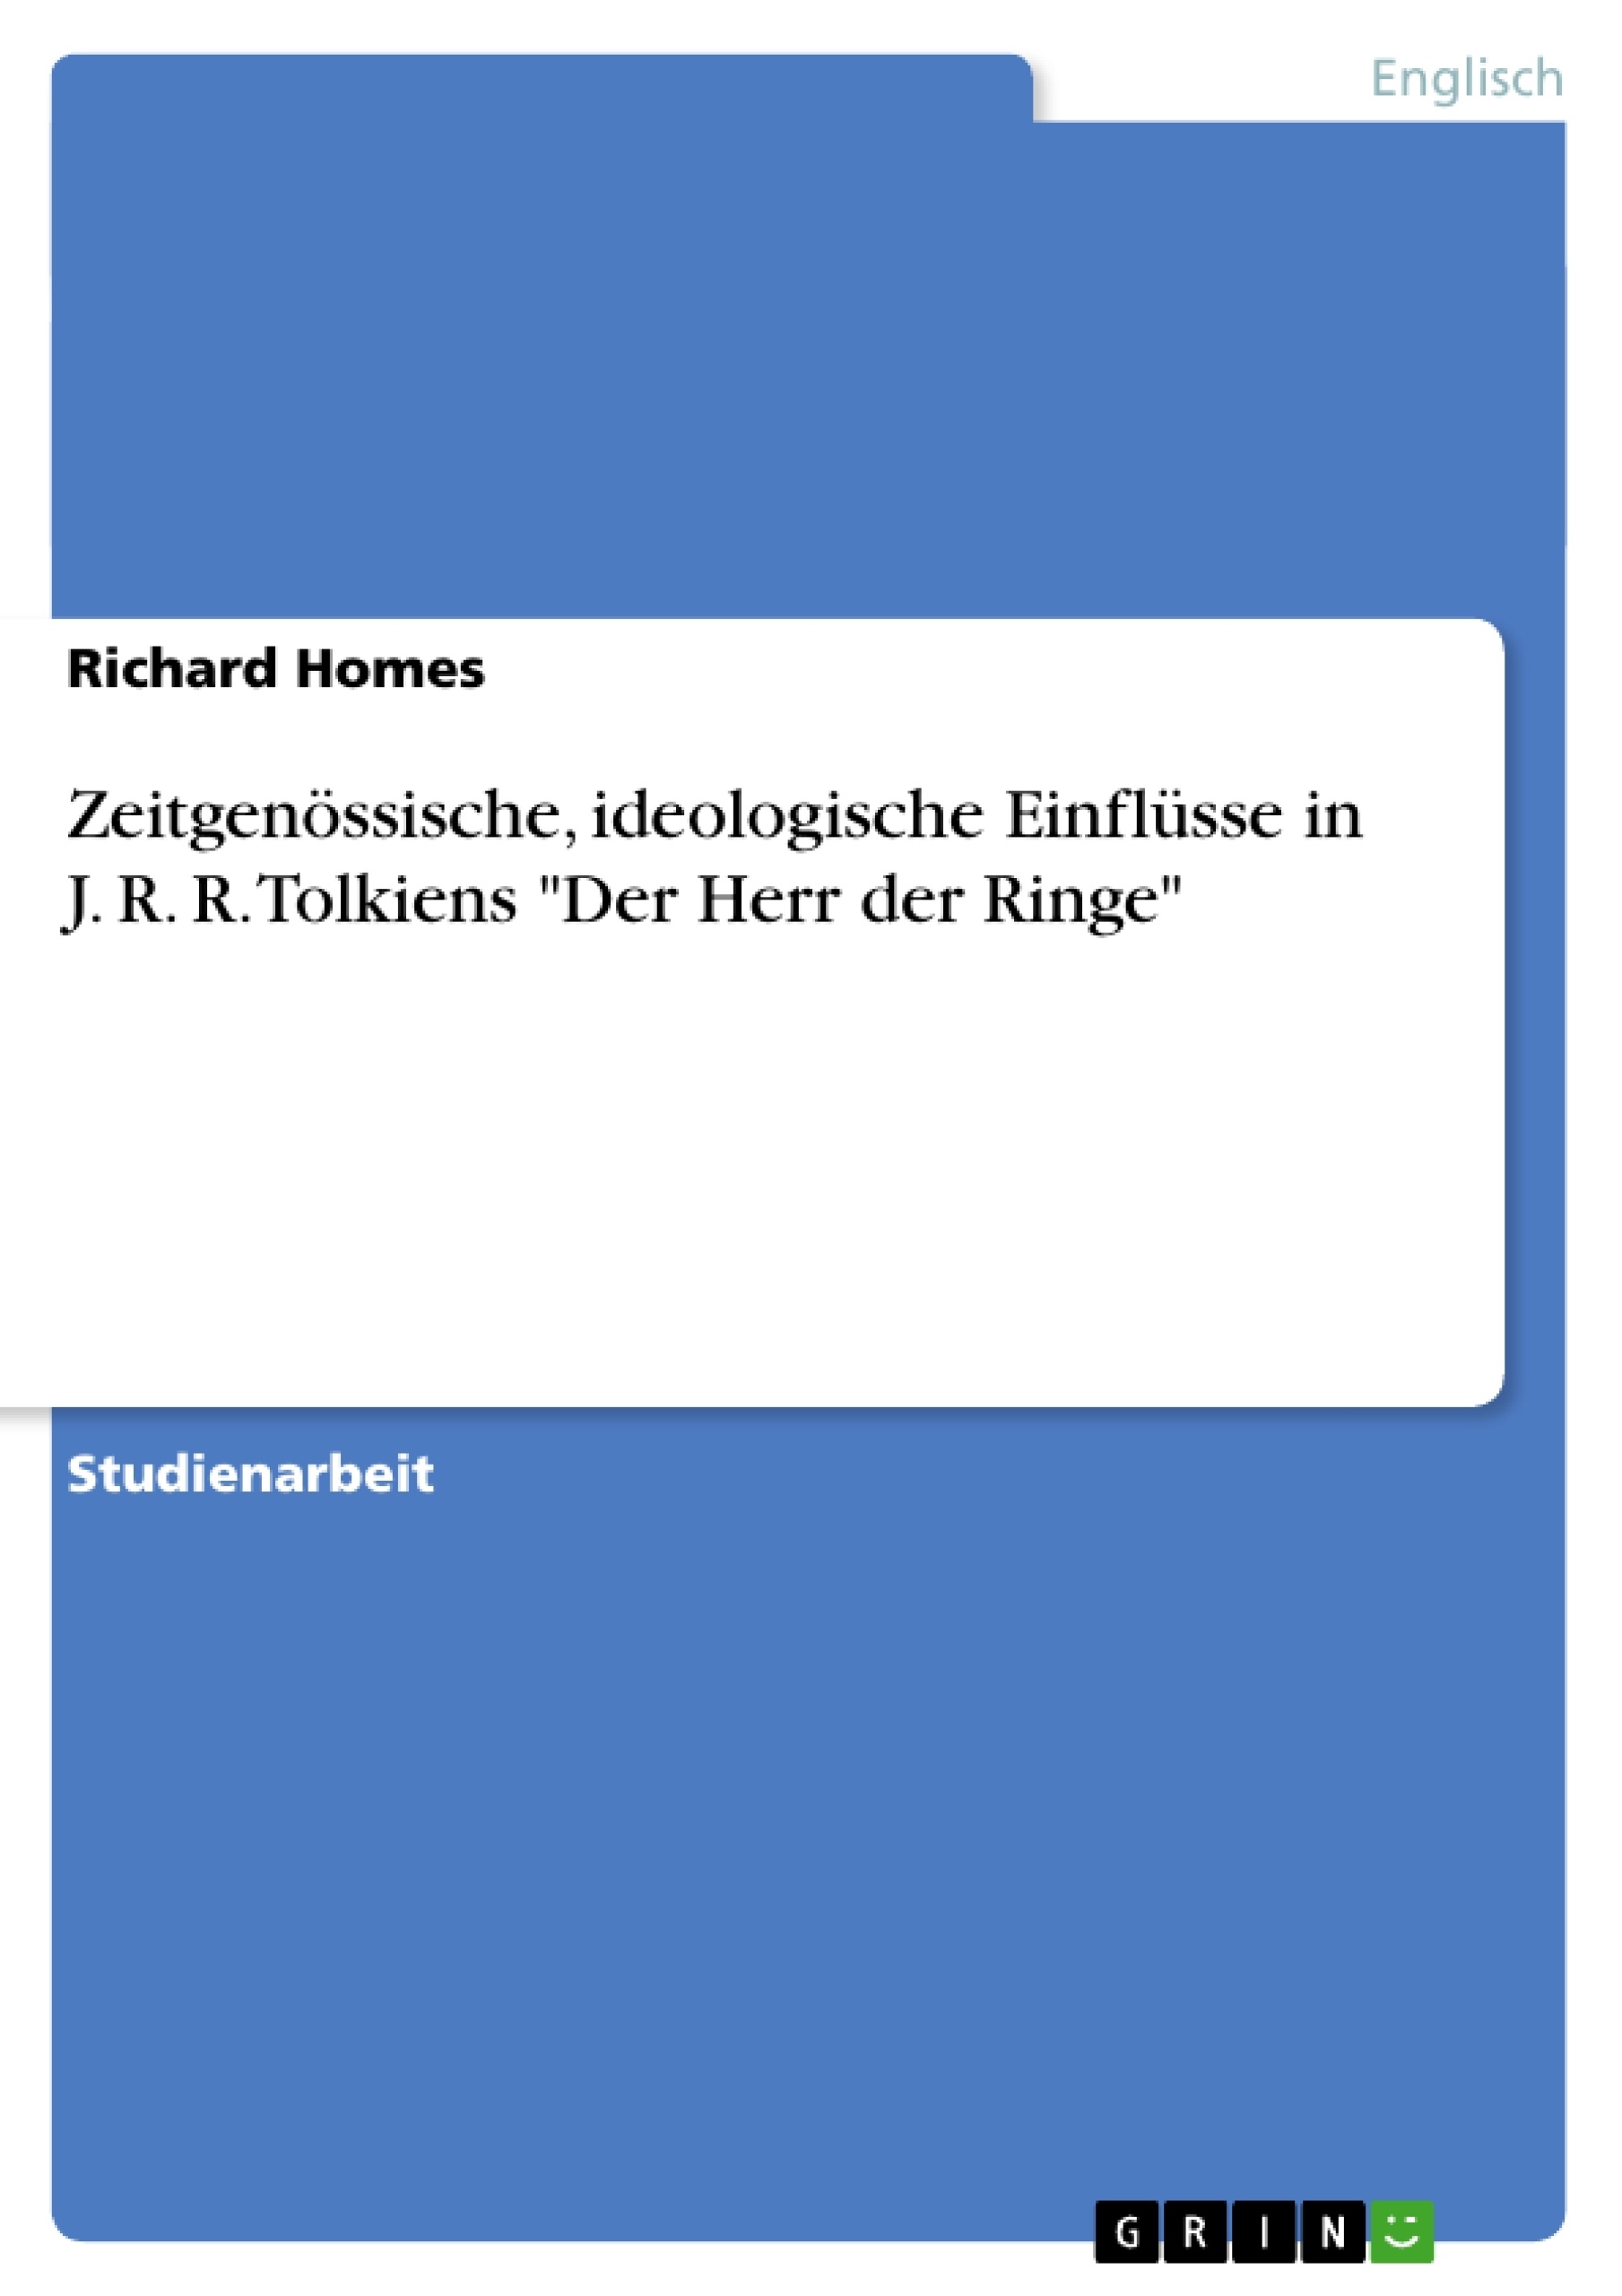 Titre: Zeitgenössische, ideologische Einflüsse in J. R. R. Tolkiens "Der Herr der Ringe"